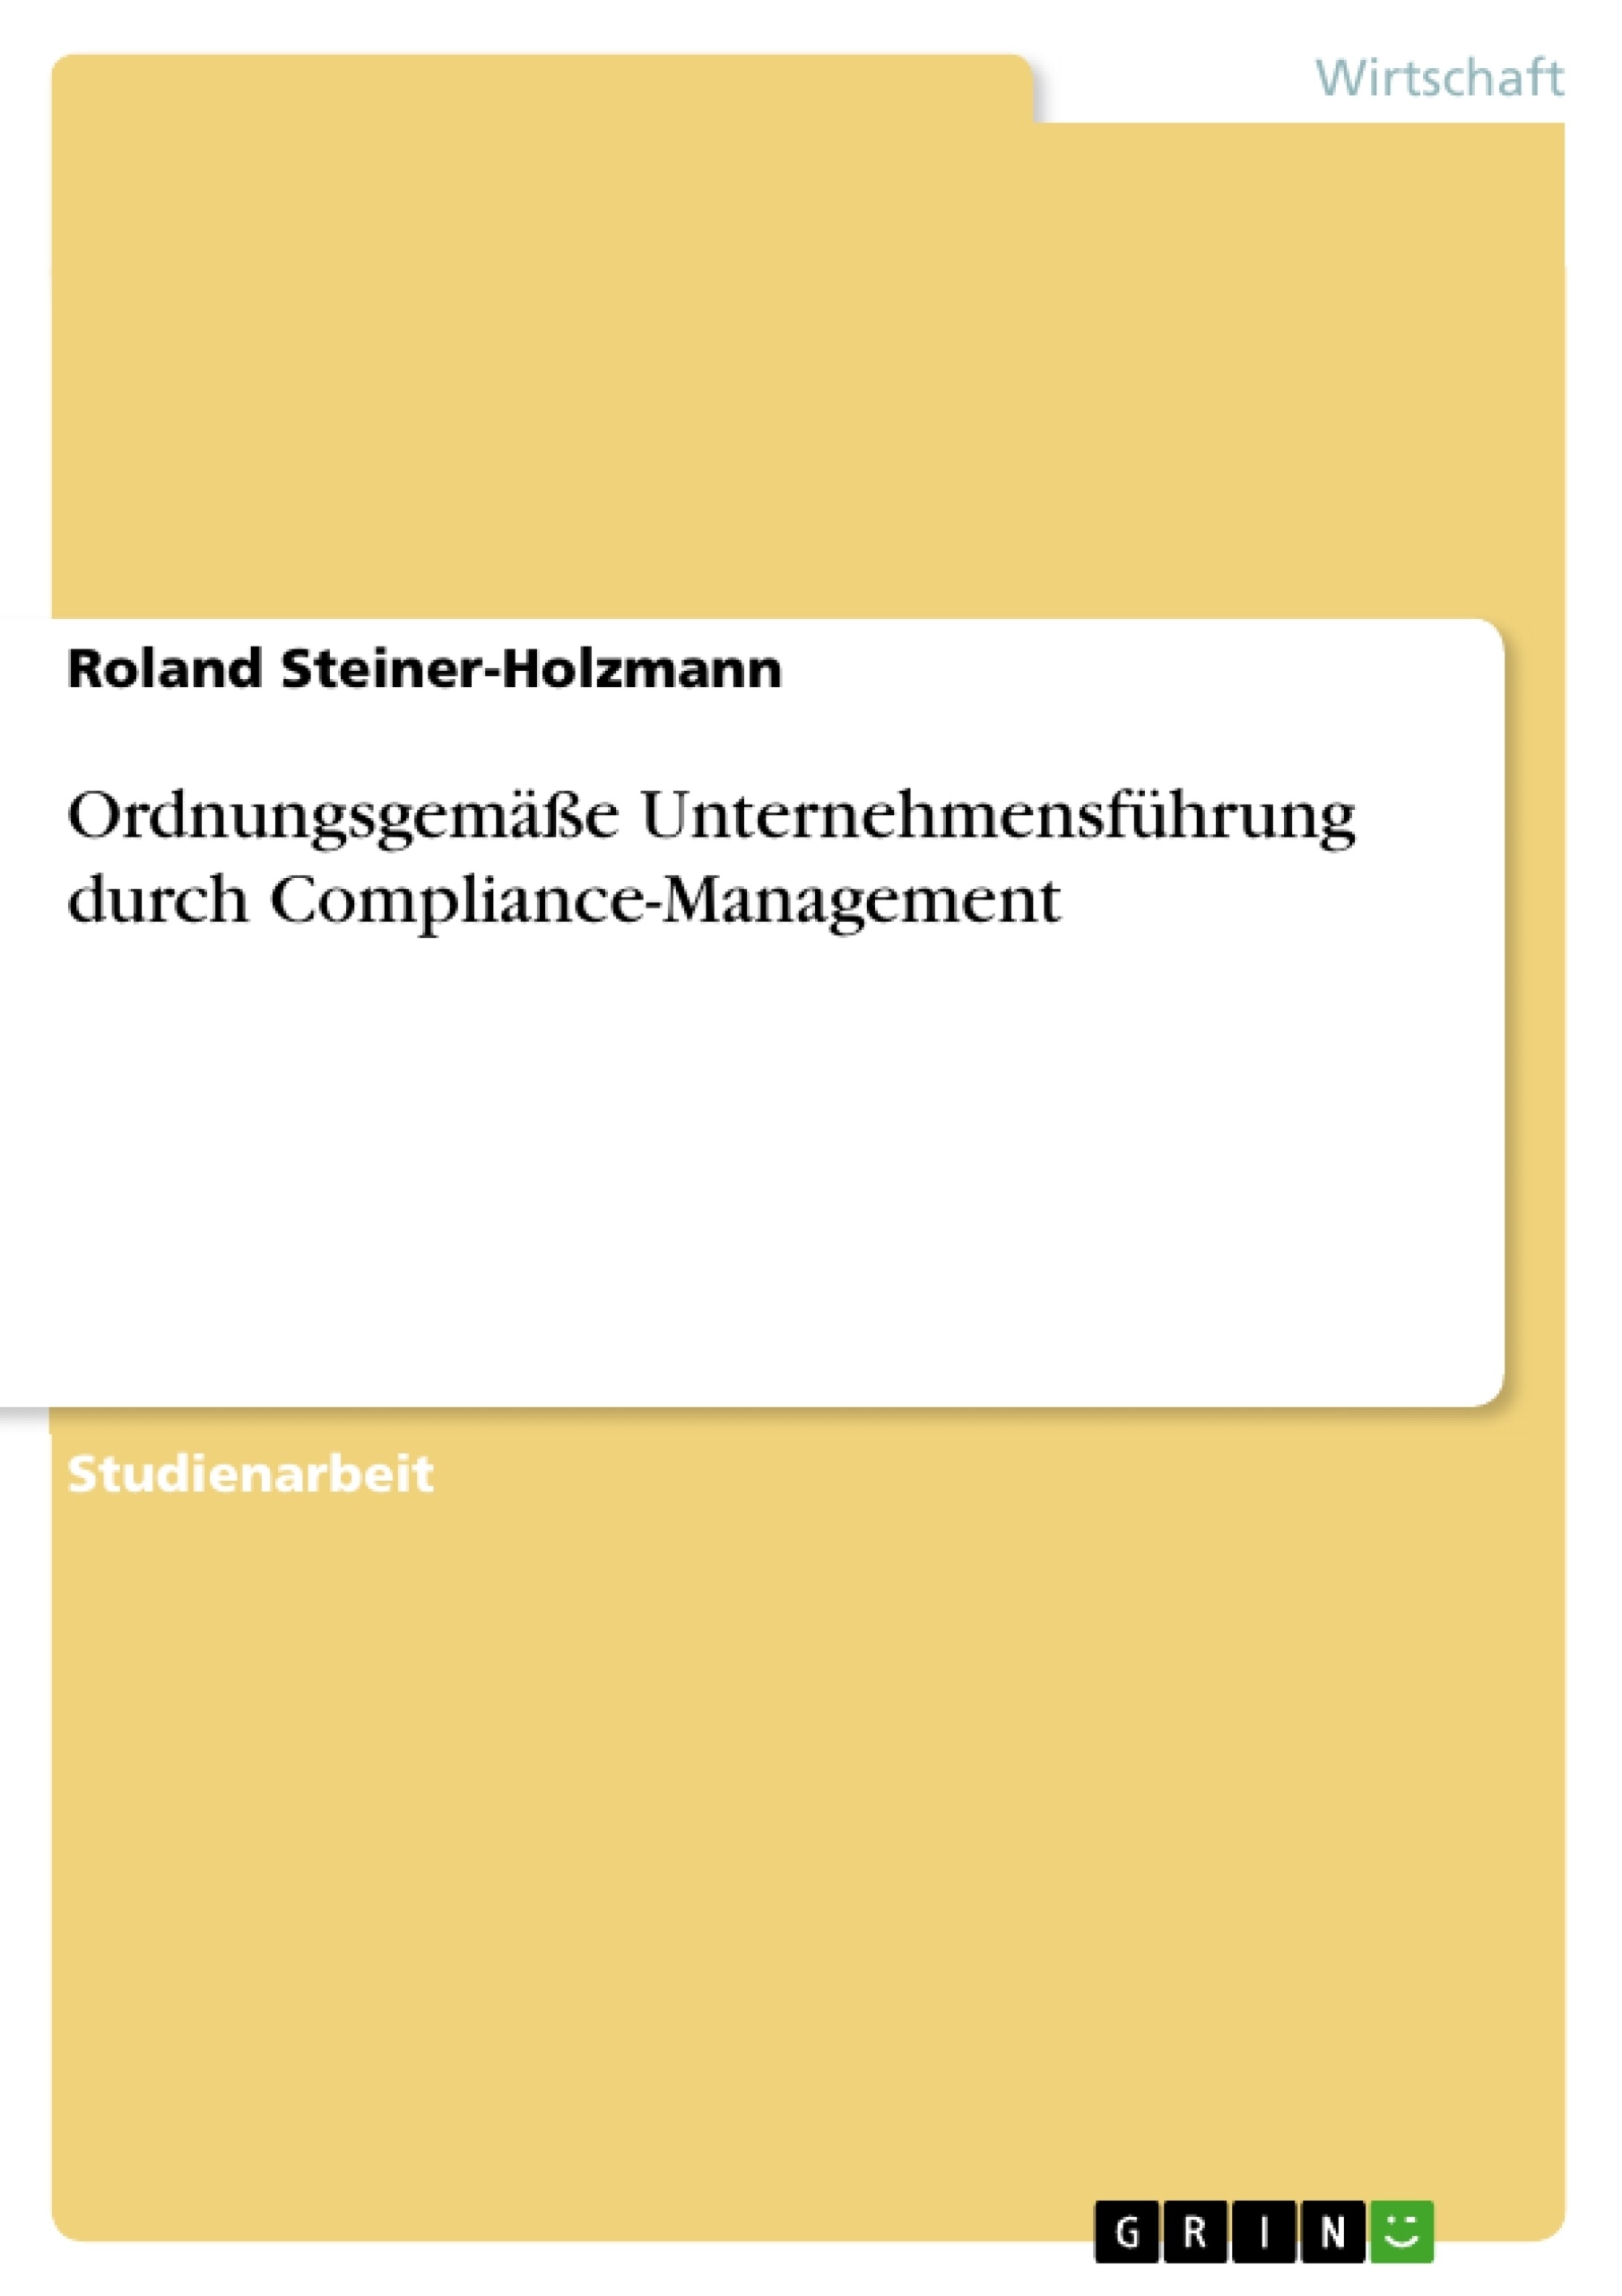 Title: Ordnungsgemäße Unternehmensführung durch Compliance-Management